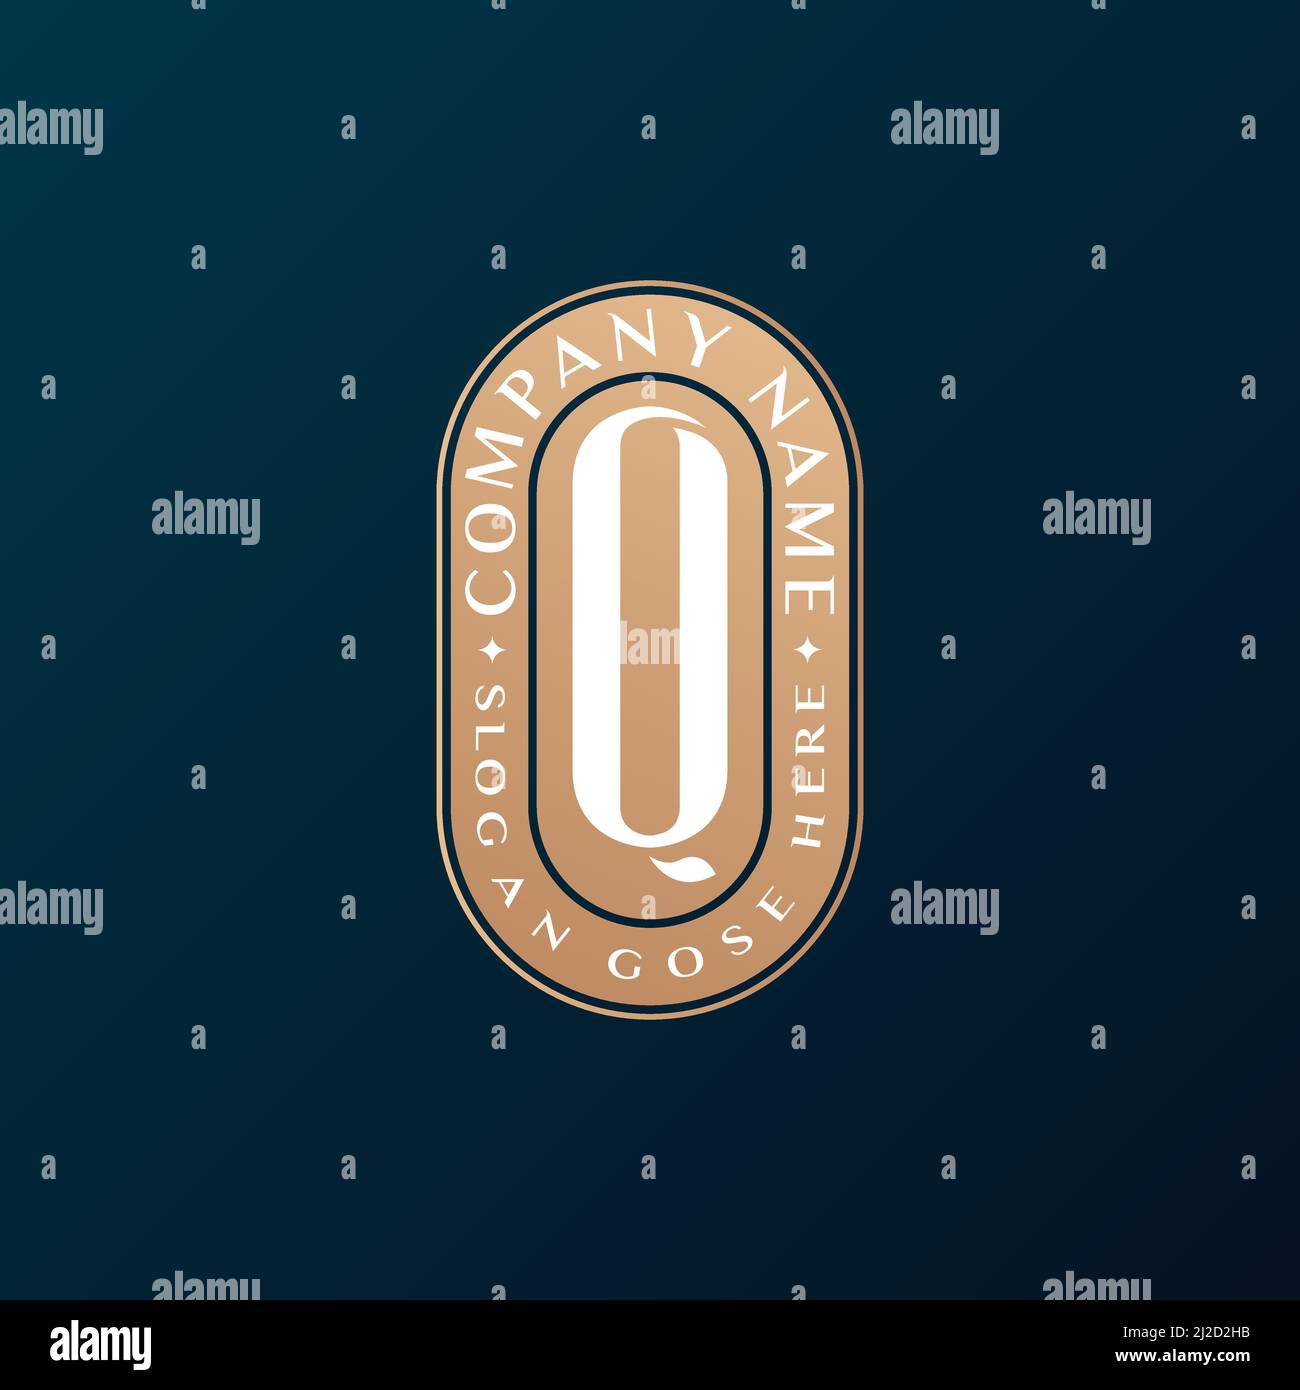 Abstrait Emblem Premium luxe identité d'entreprise élégante lettre Q logo design Illustration de Vecteur